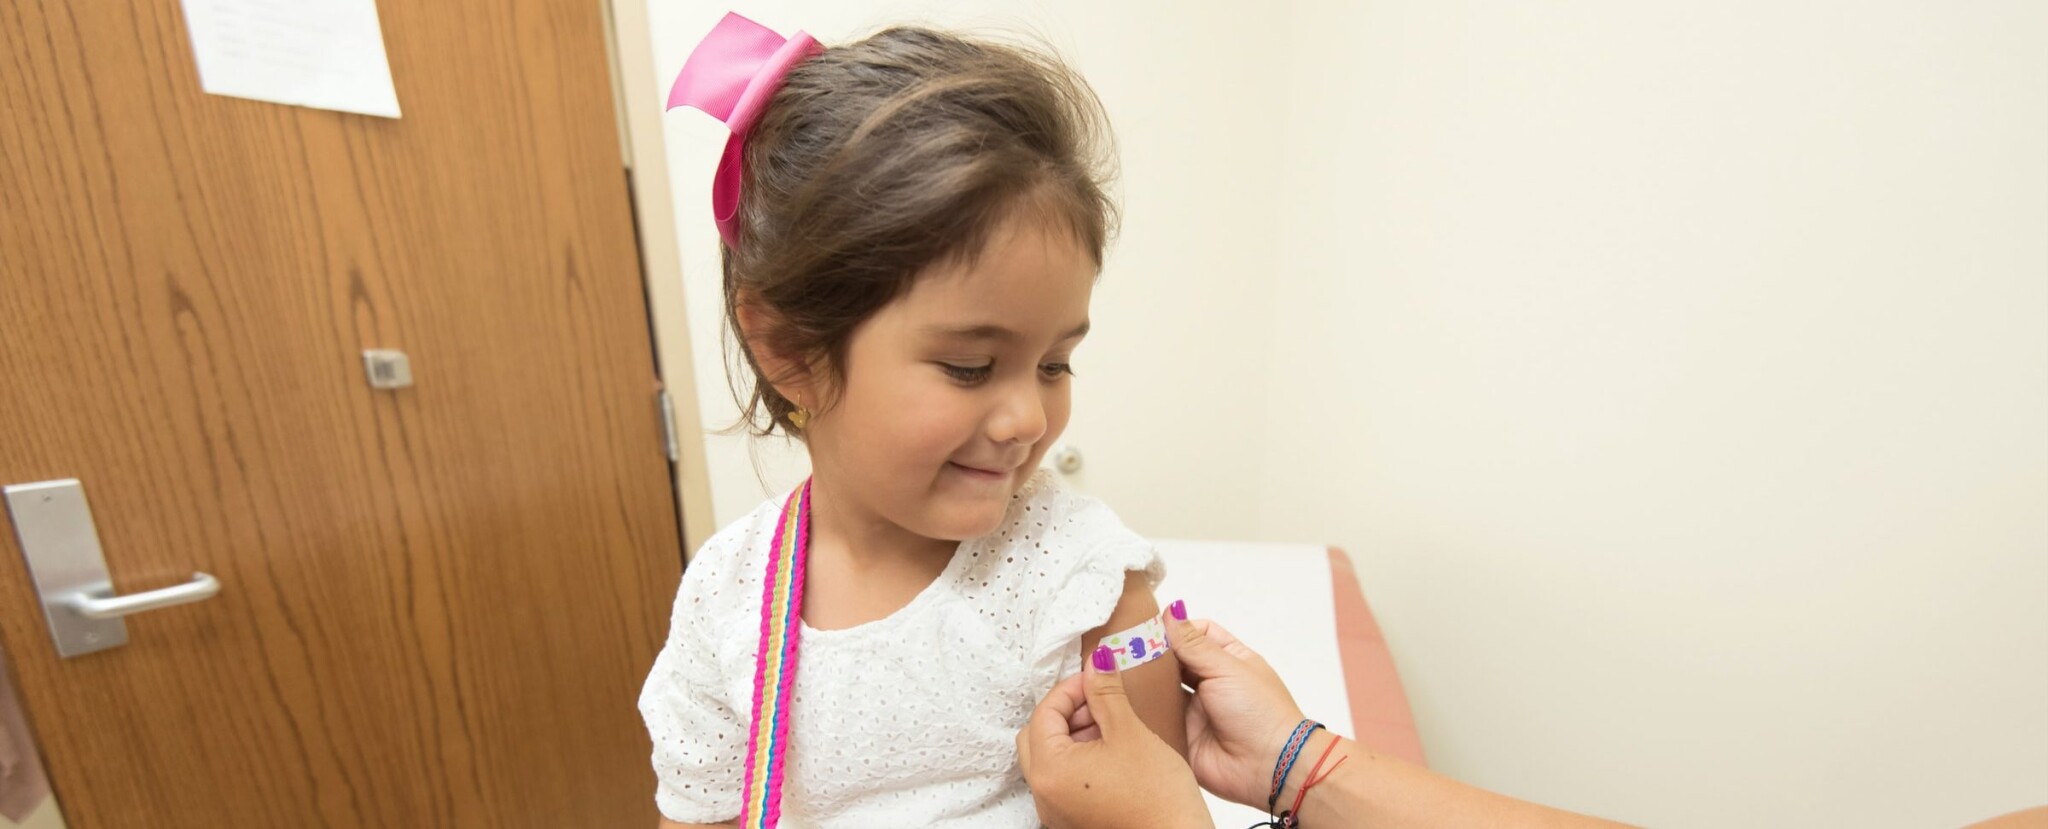 V Bratislave spustili očkovanie detí proti covidu. Ako postupovať?